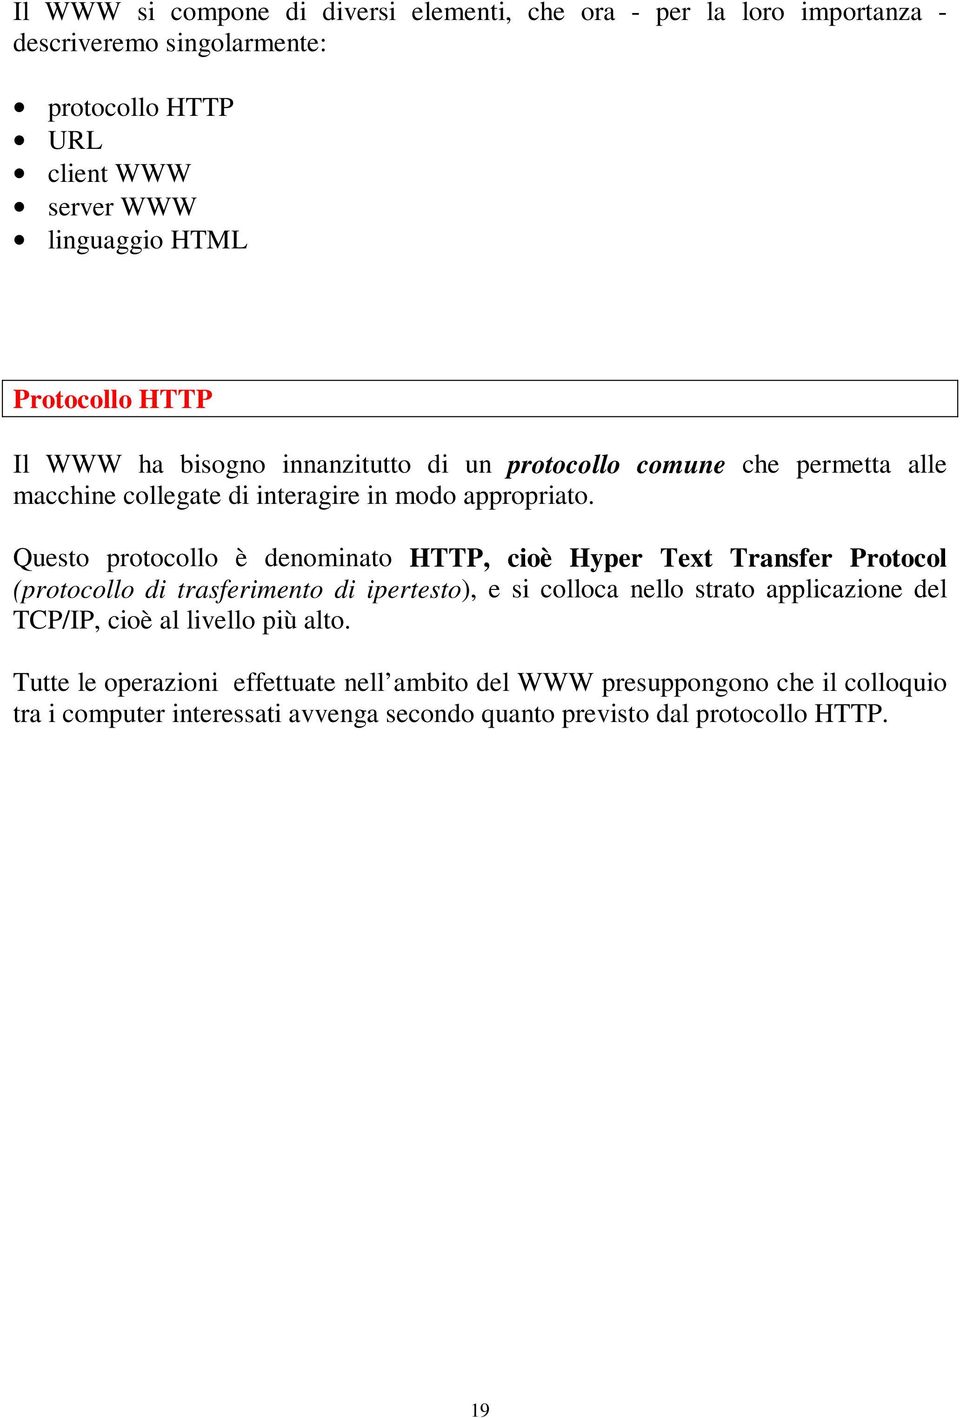 Questo protocollo è denominato HTTP, cioè Hyper Text Transfer Protocol (protocollo di trasferimento di ipertesto), e si colloca nello strato applicazione del